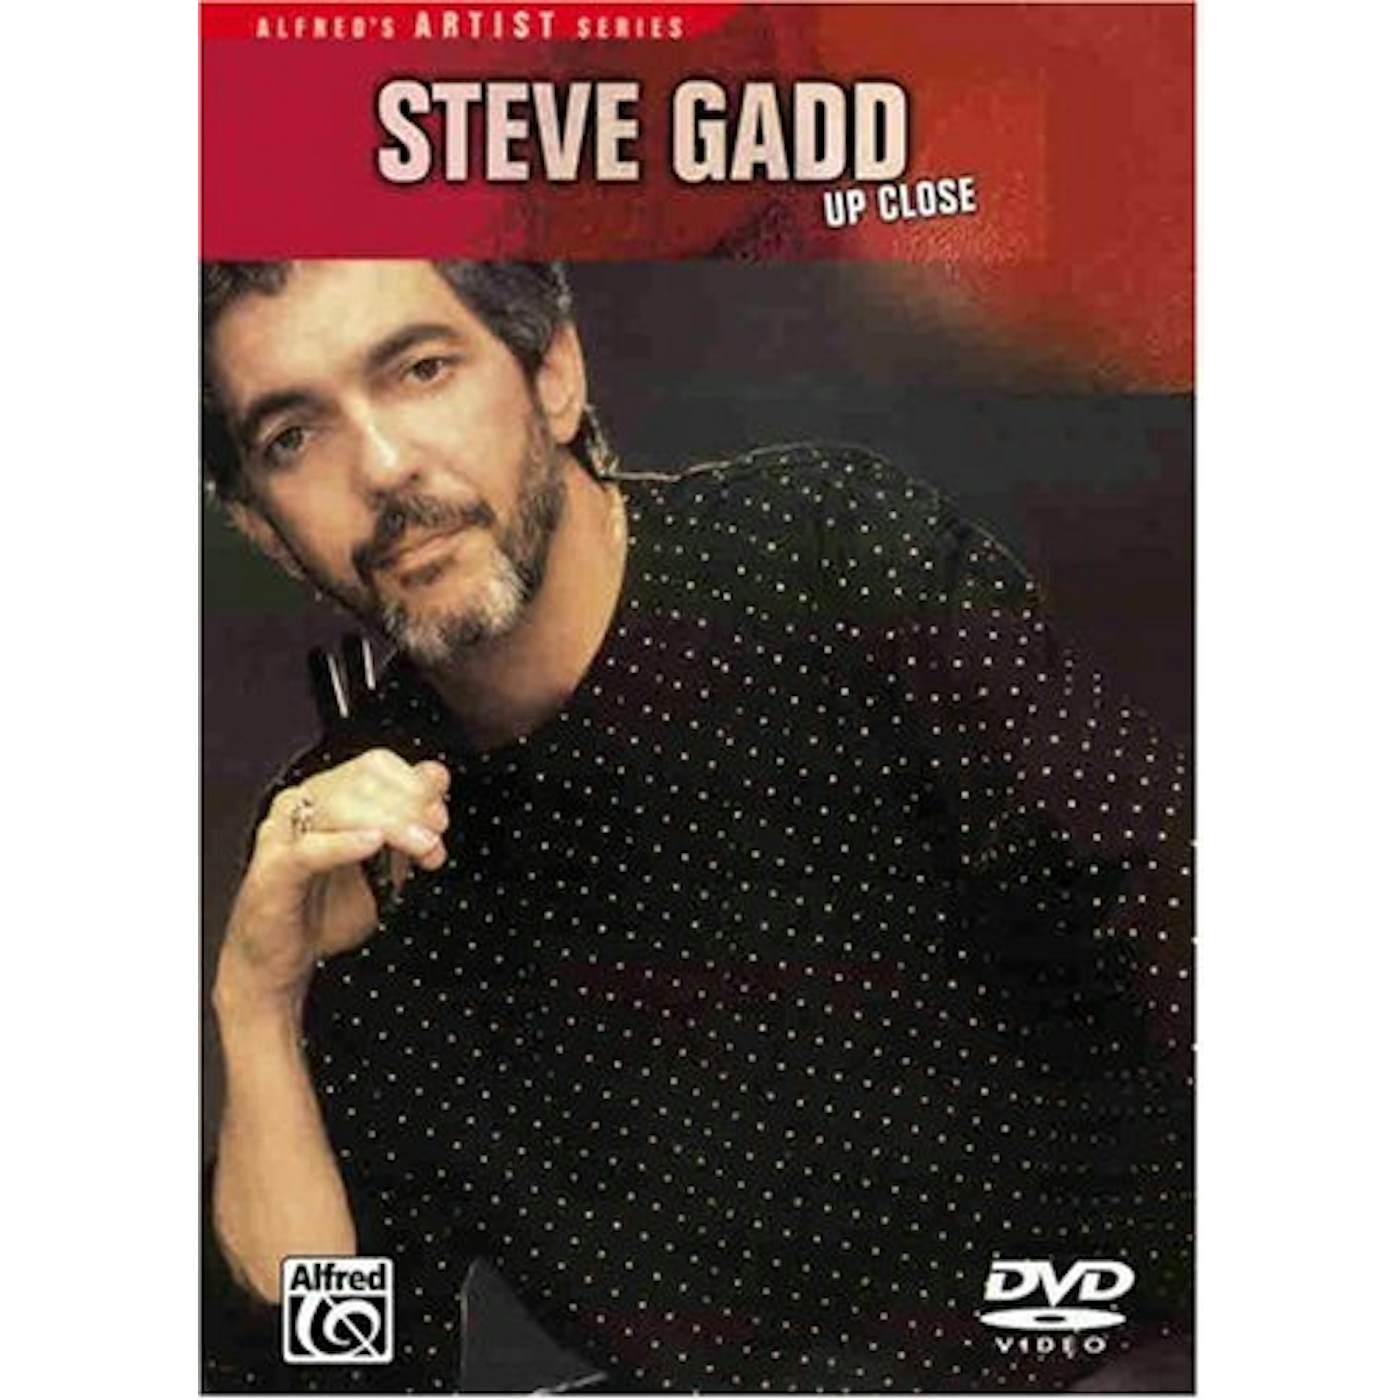 Steve Gadd UP CLOSE DVD